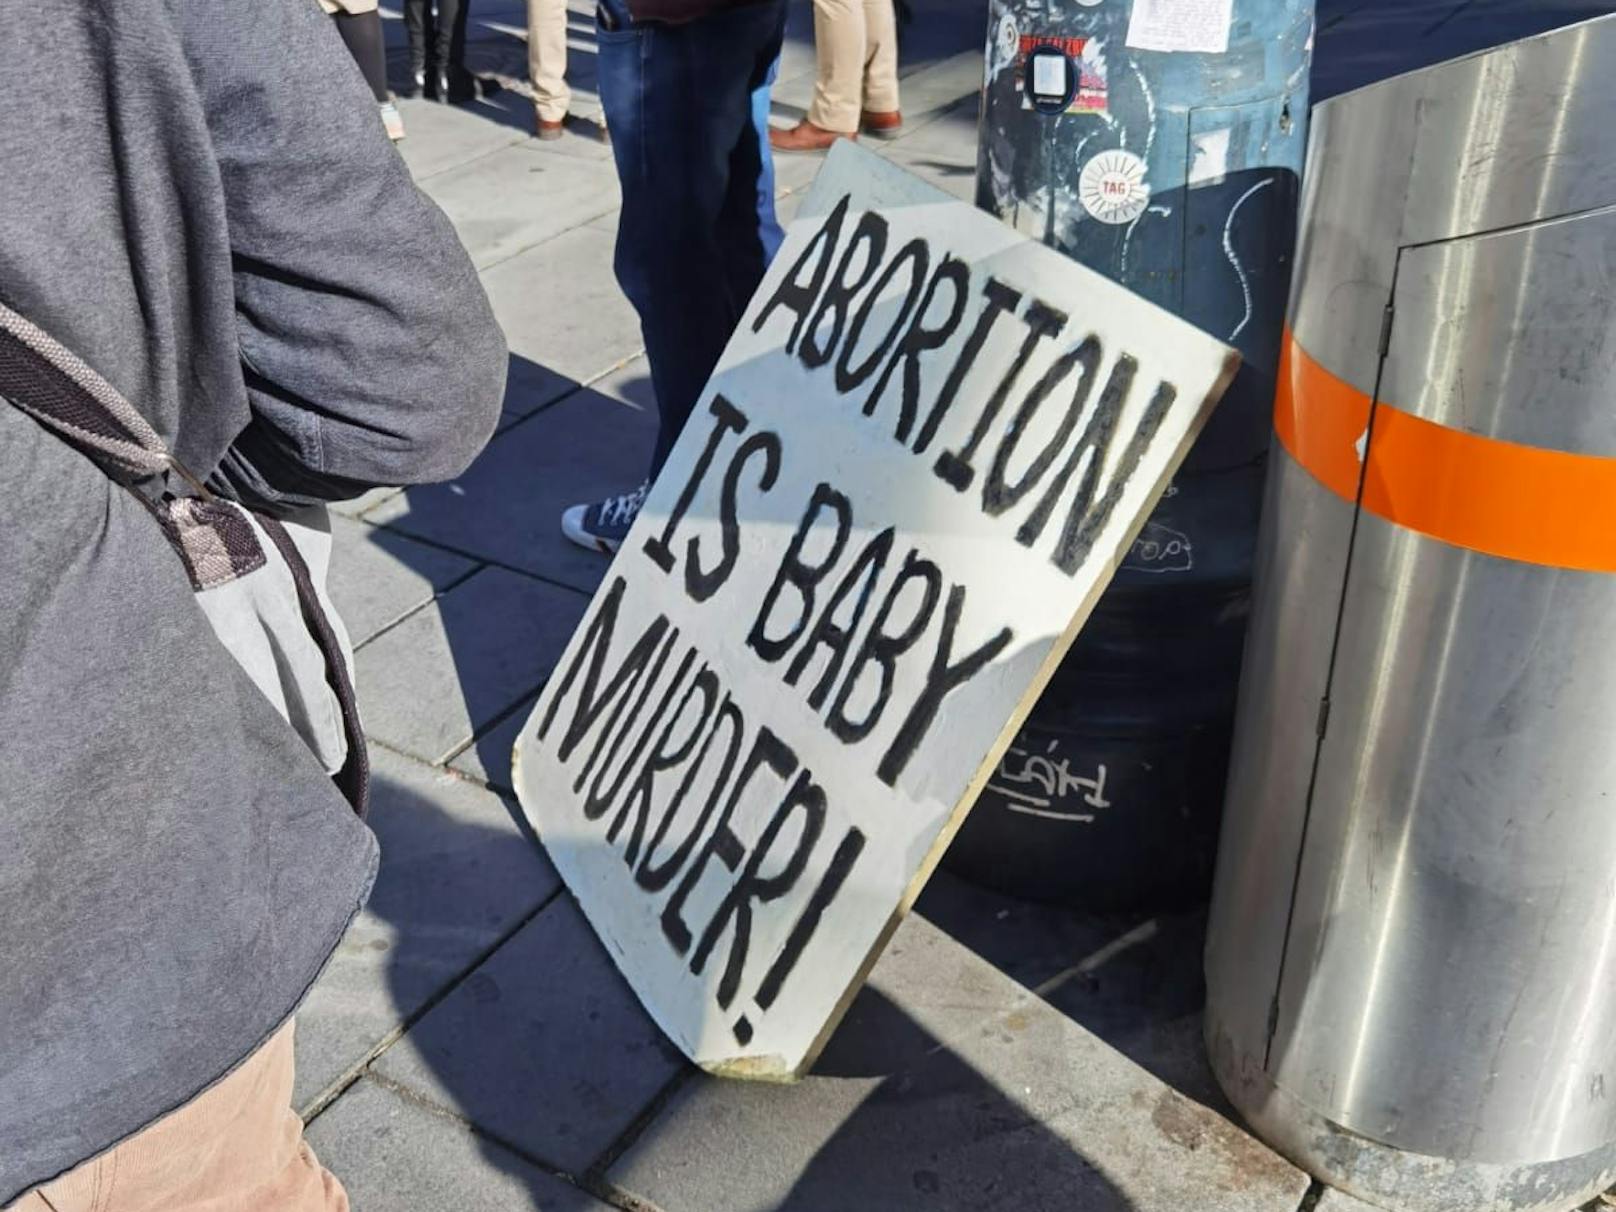 Obwohl man behauptet sich für Frauen einzusetzen, waren auch Botschaften wie "Abtreibung ist Baby-Mord" vertreten.